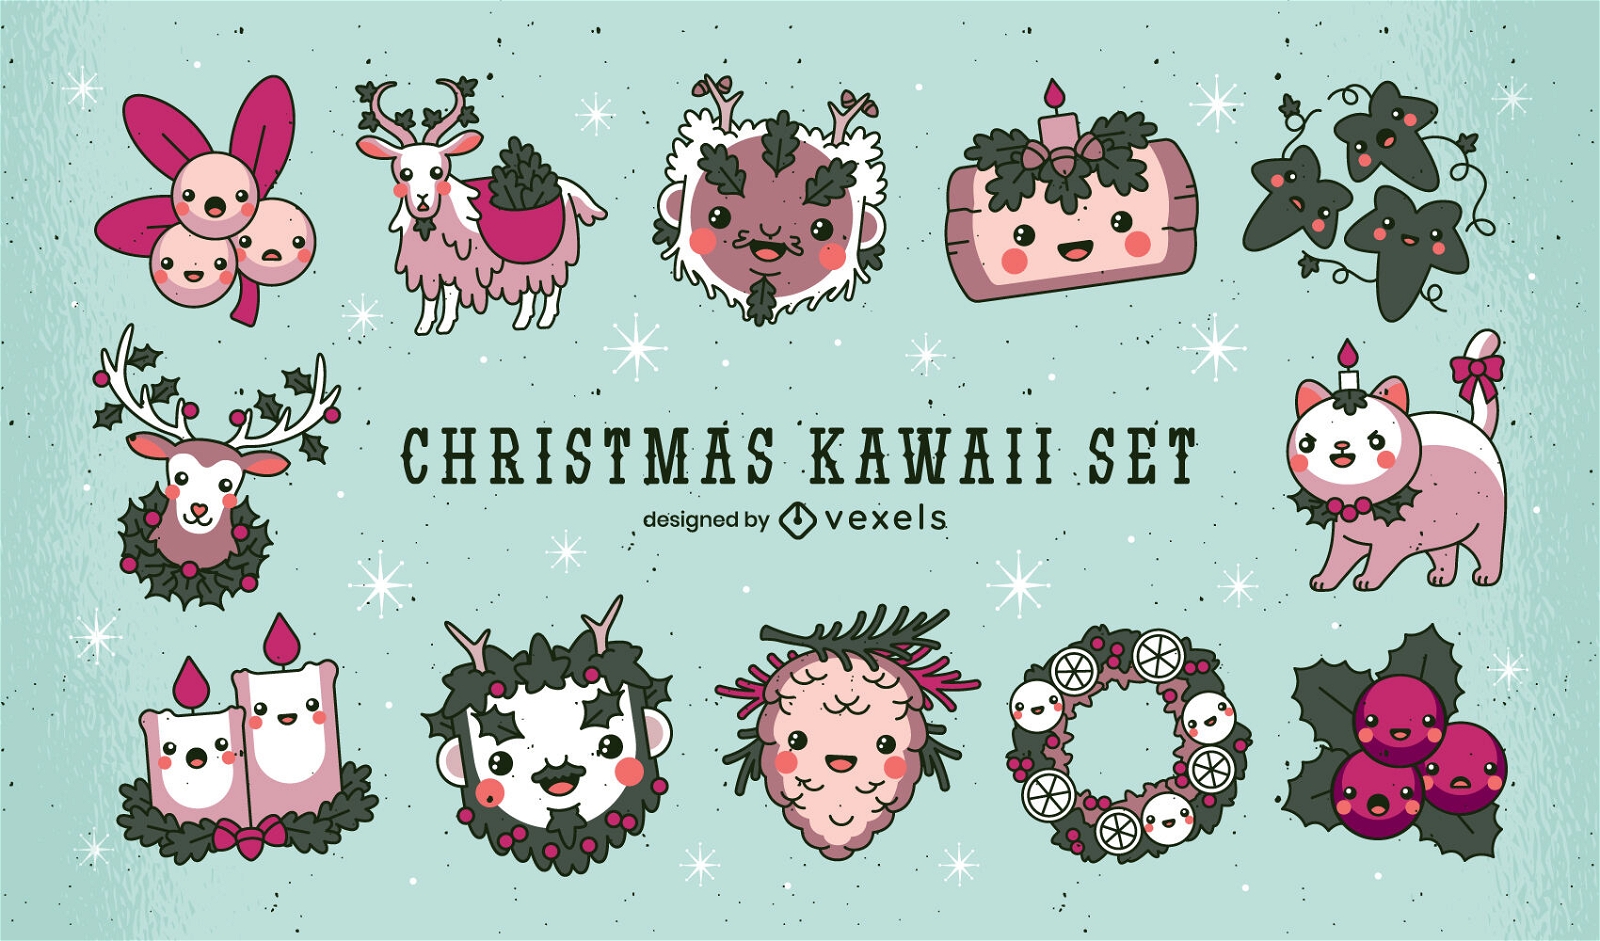 Elementos navideños kawaii set